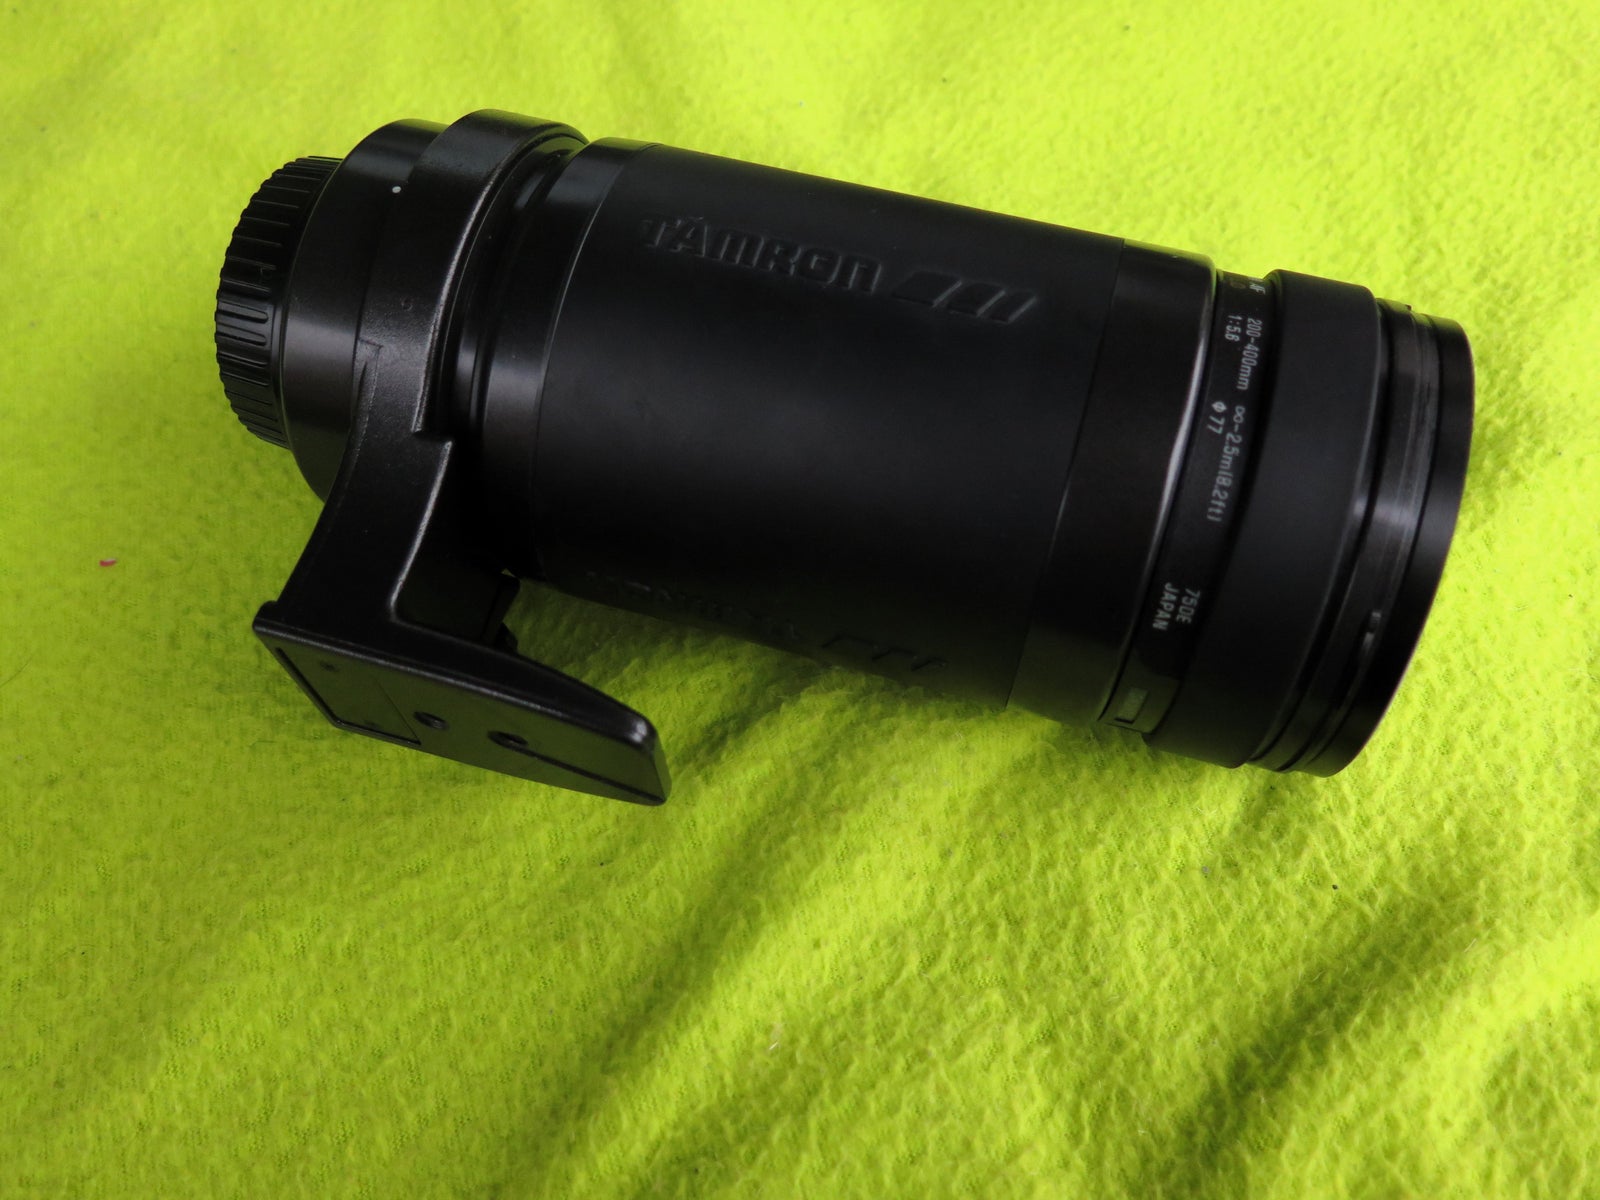 Super-Tele-zoom., Canon, 200 - 400 mm